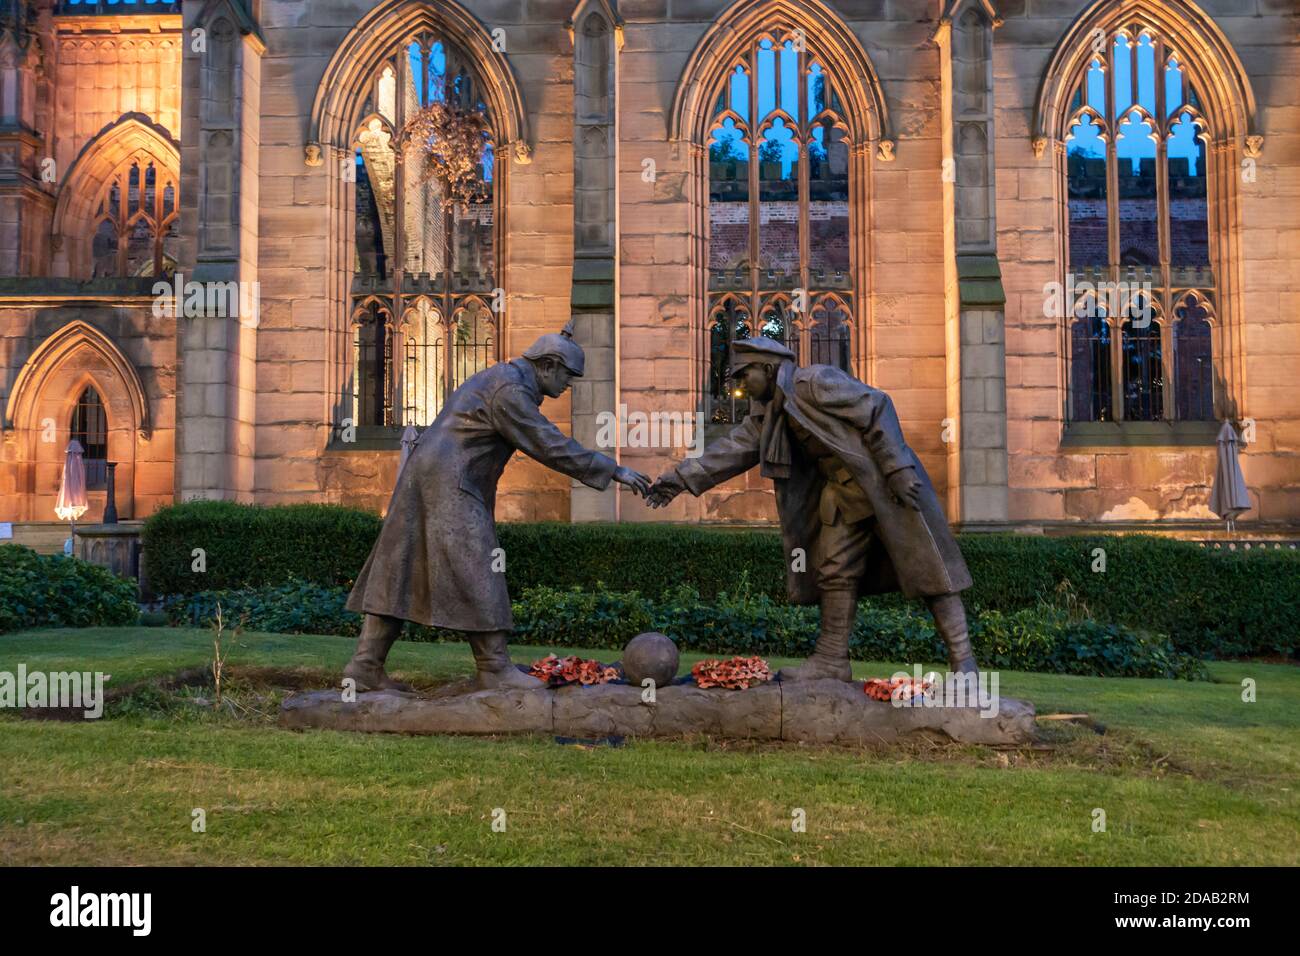 La estatua de "todos juntos ahora" de Andy Edwards, conmemorando la tregua del día de Navidad de 1914, se encuentra en los terrenos de la Iglesia de San Lucas en Liverpool, Inglaterra, Reino Unido Foto de stock